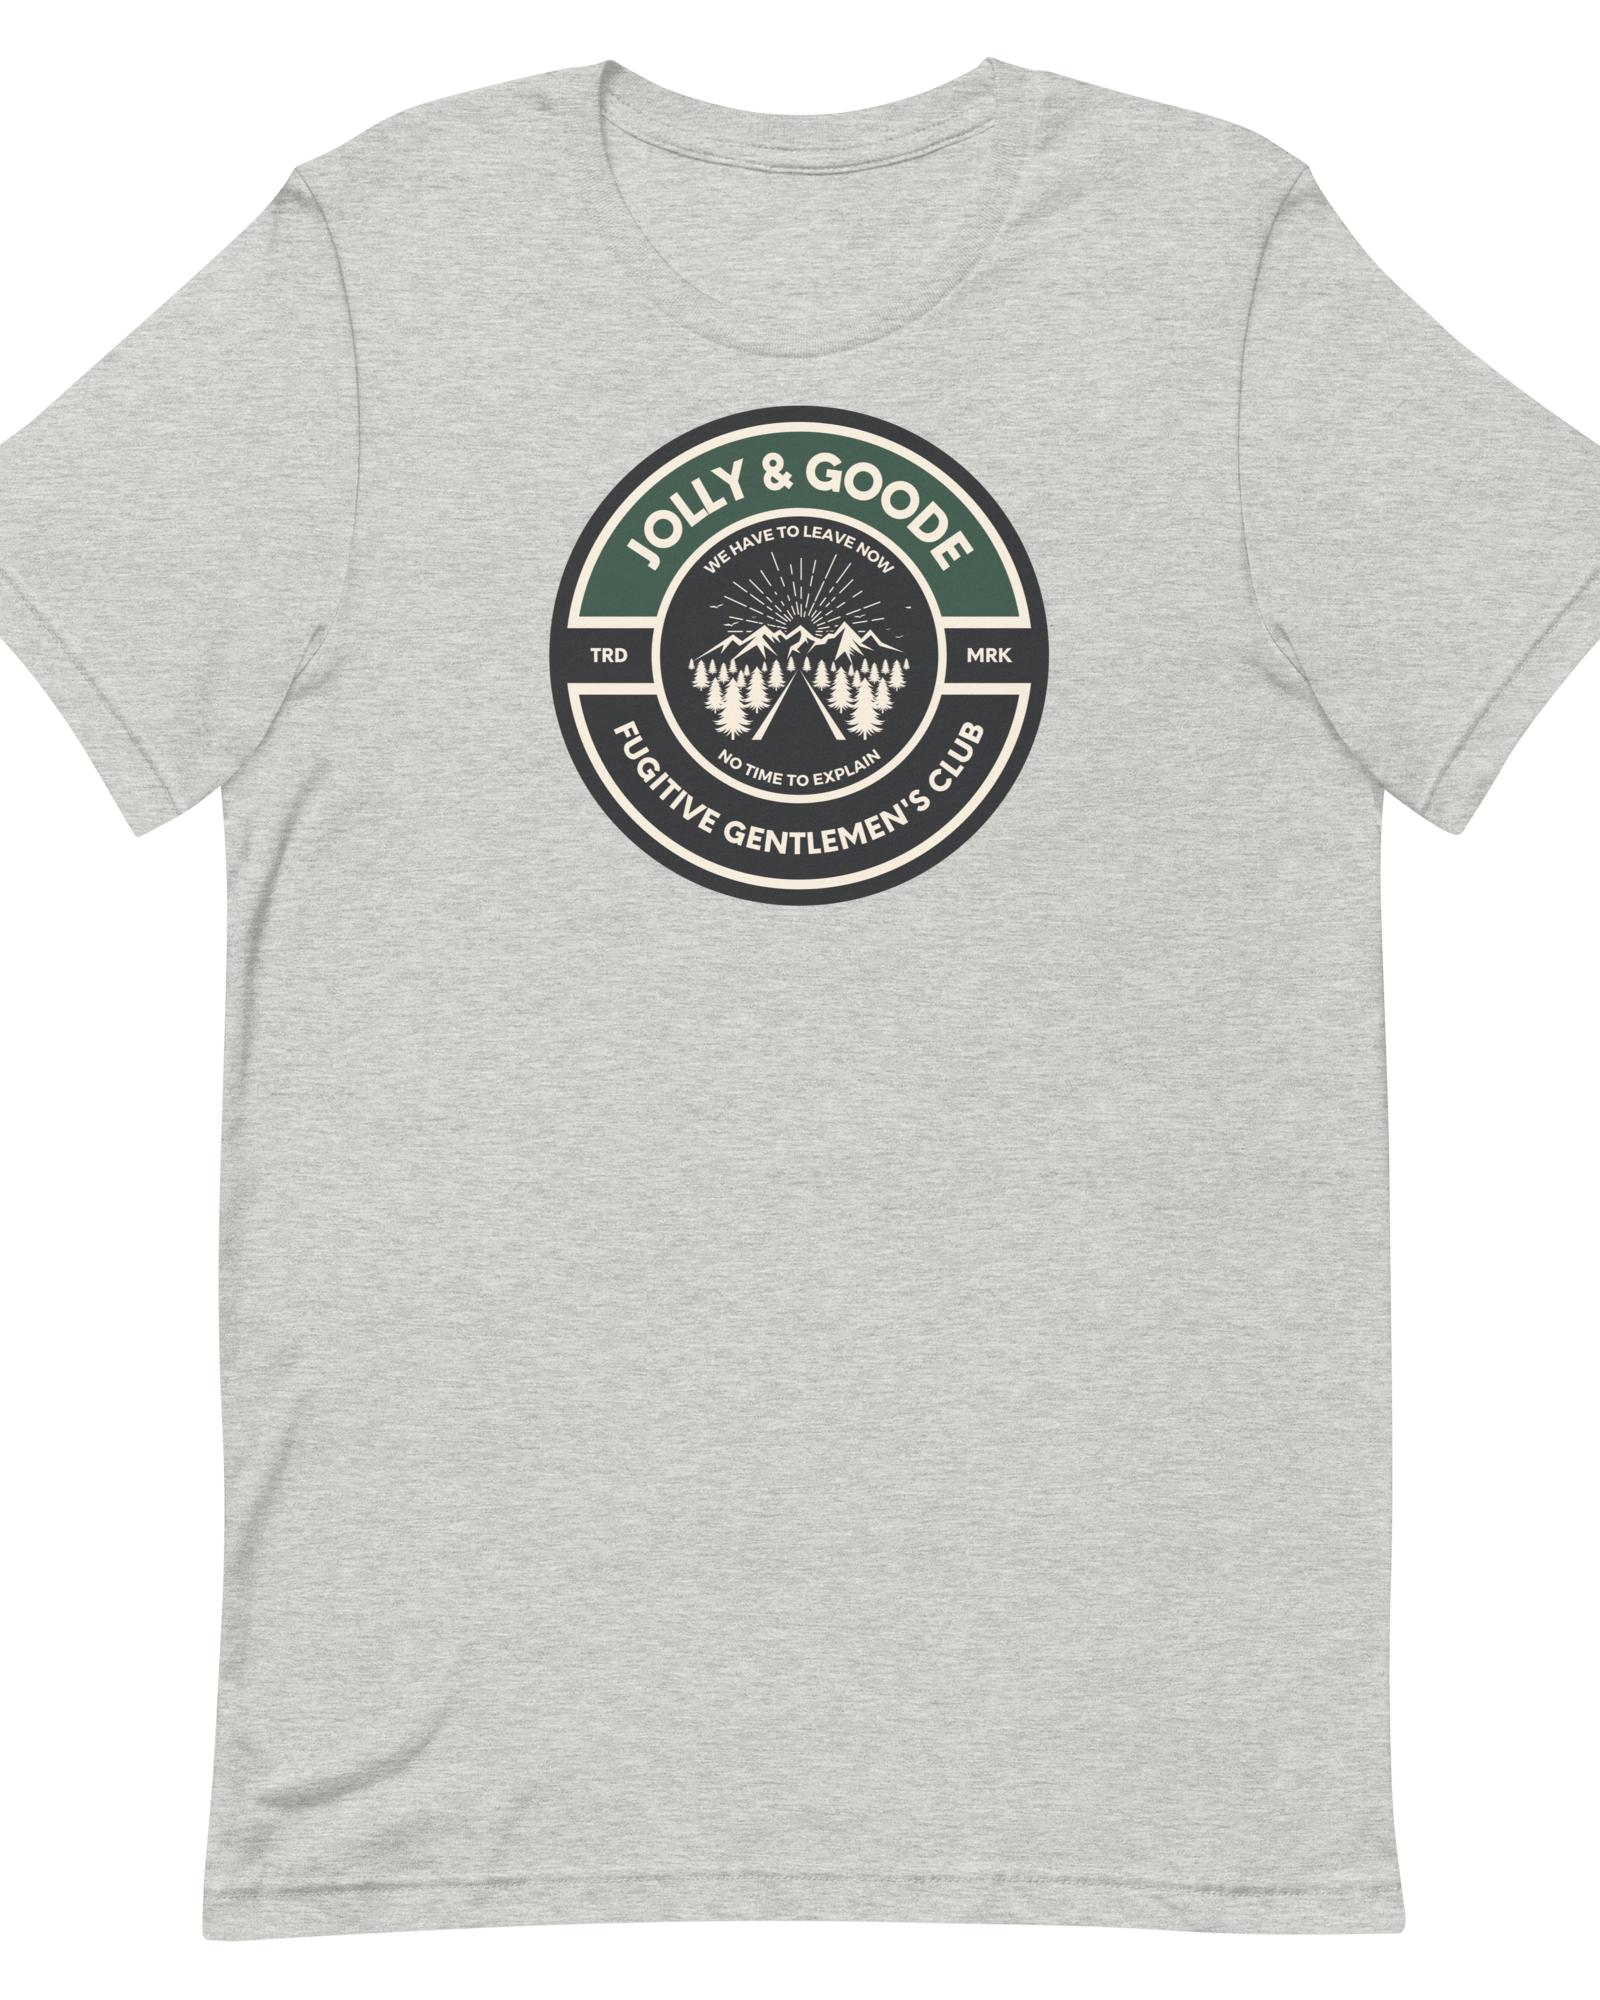 Fugitive Gentlemen's Club T-shirt Shirts & Tops Jolly & Goode